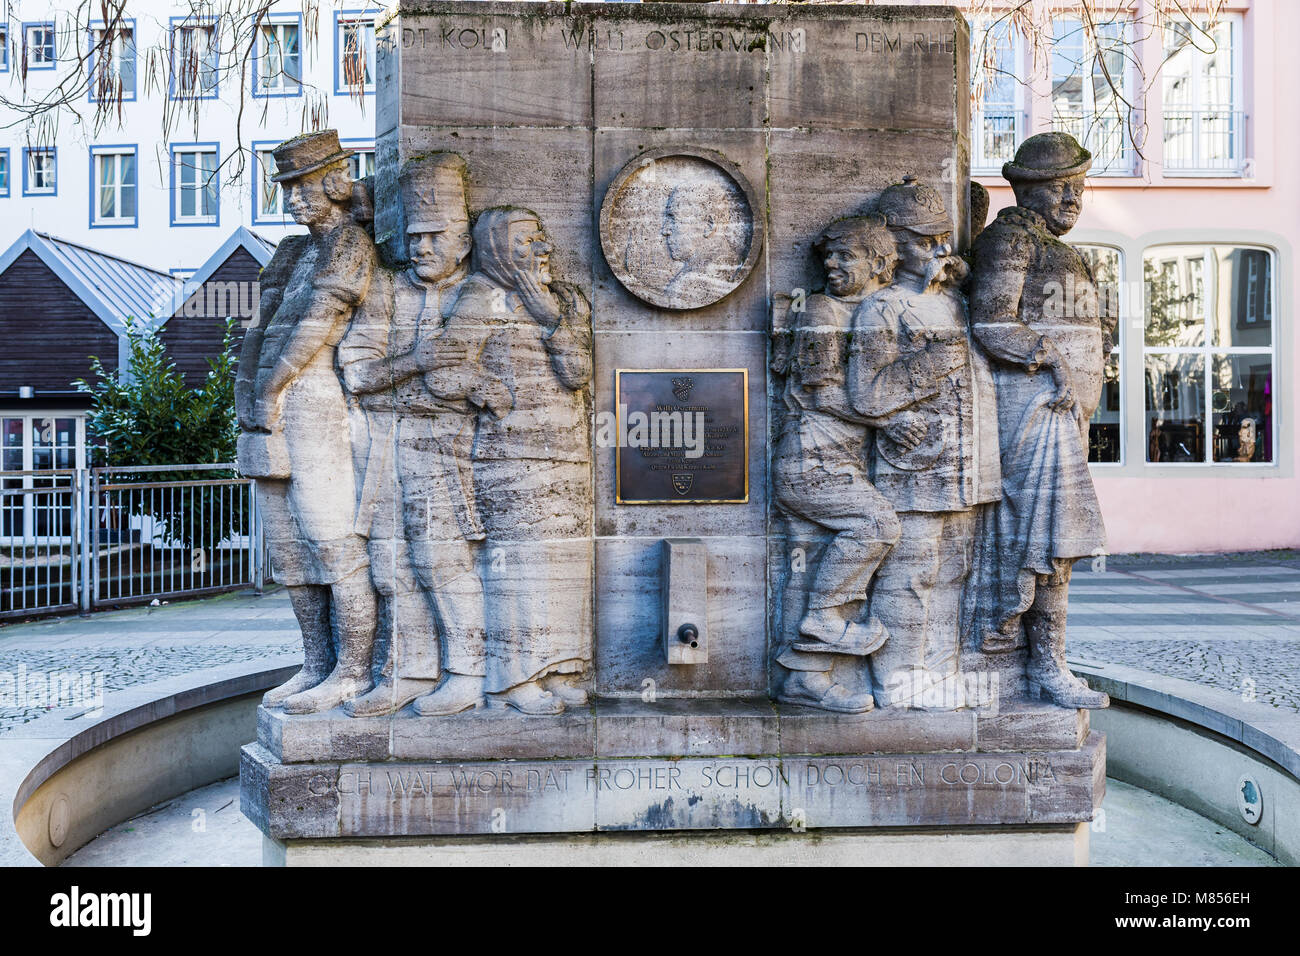 Cologne, Allemagne - 24 Février 2018 : Willi Ostermann memorial fontaine dans la vieille ville de Cologne. Ostermann est un parolier, compositeur et interprète de c Banque D'Images